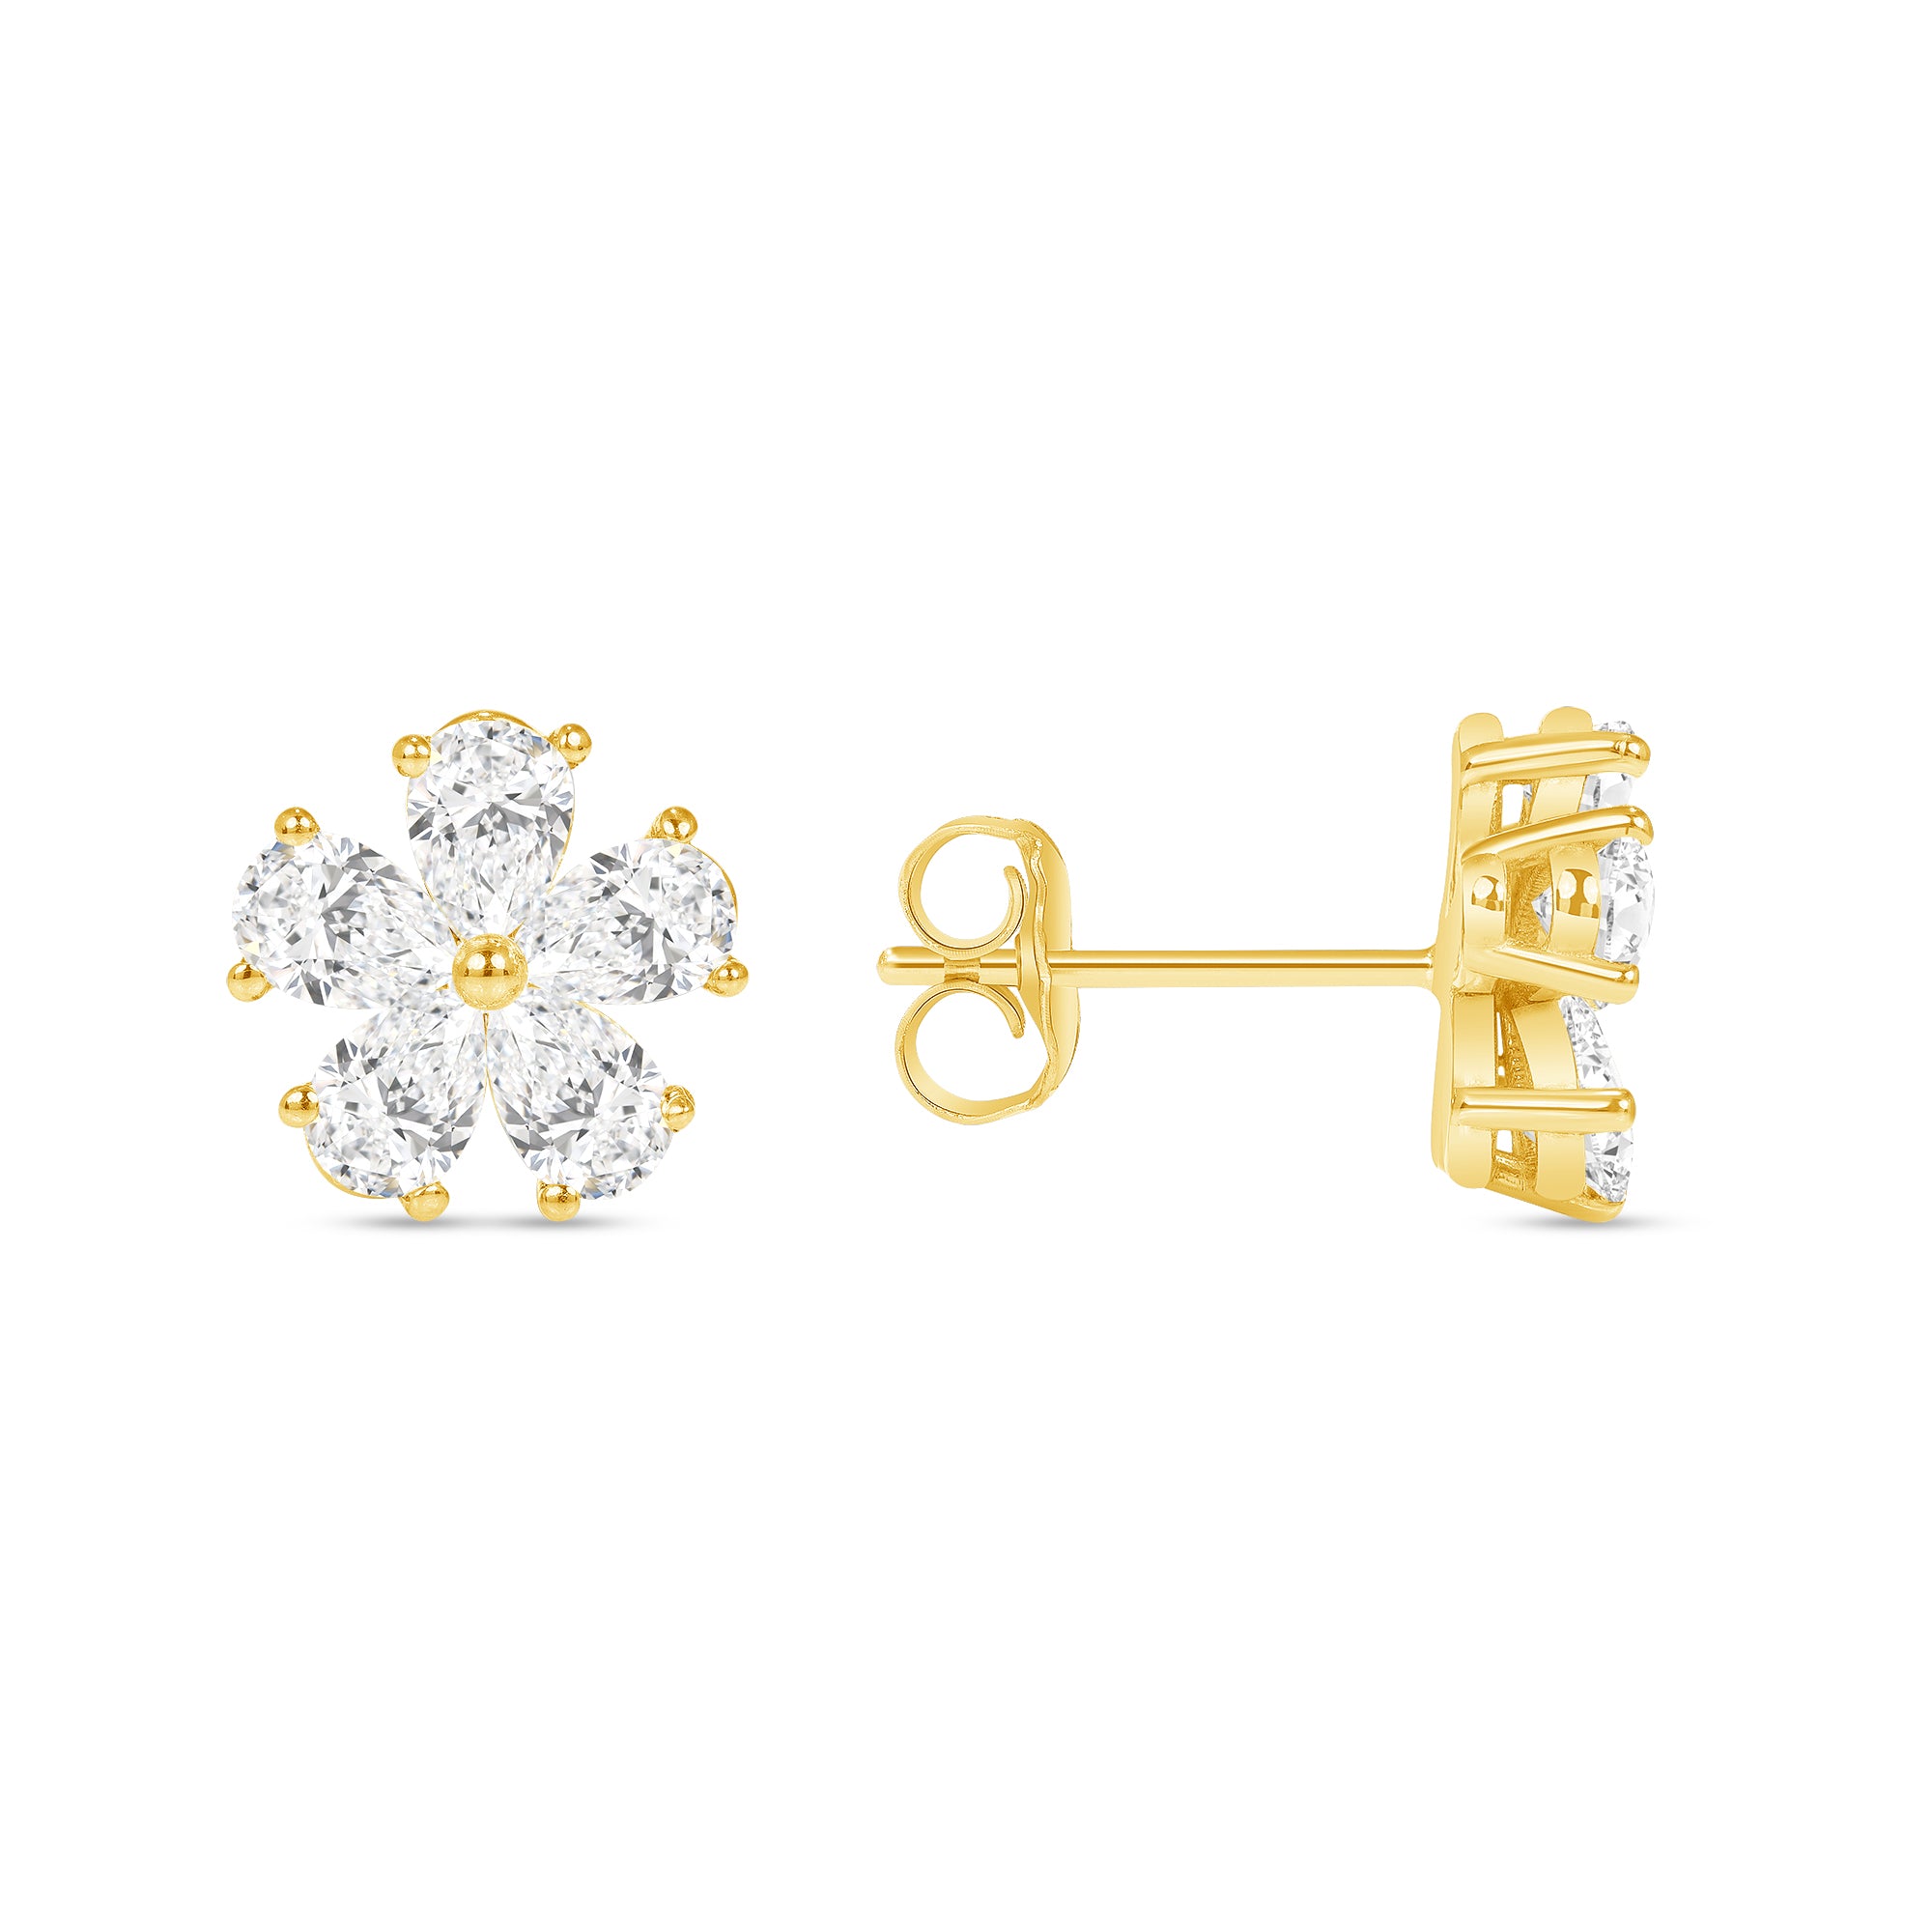 New Designer Gola Stone Earring For Girls & Women.(Gold Color)